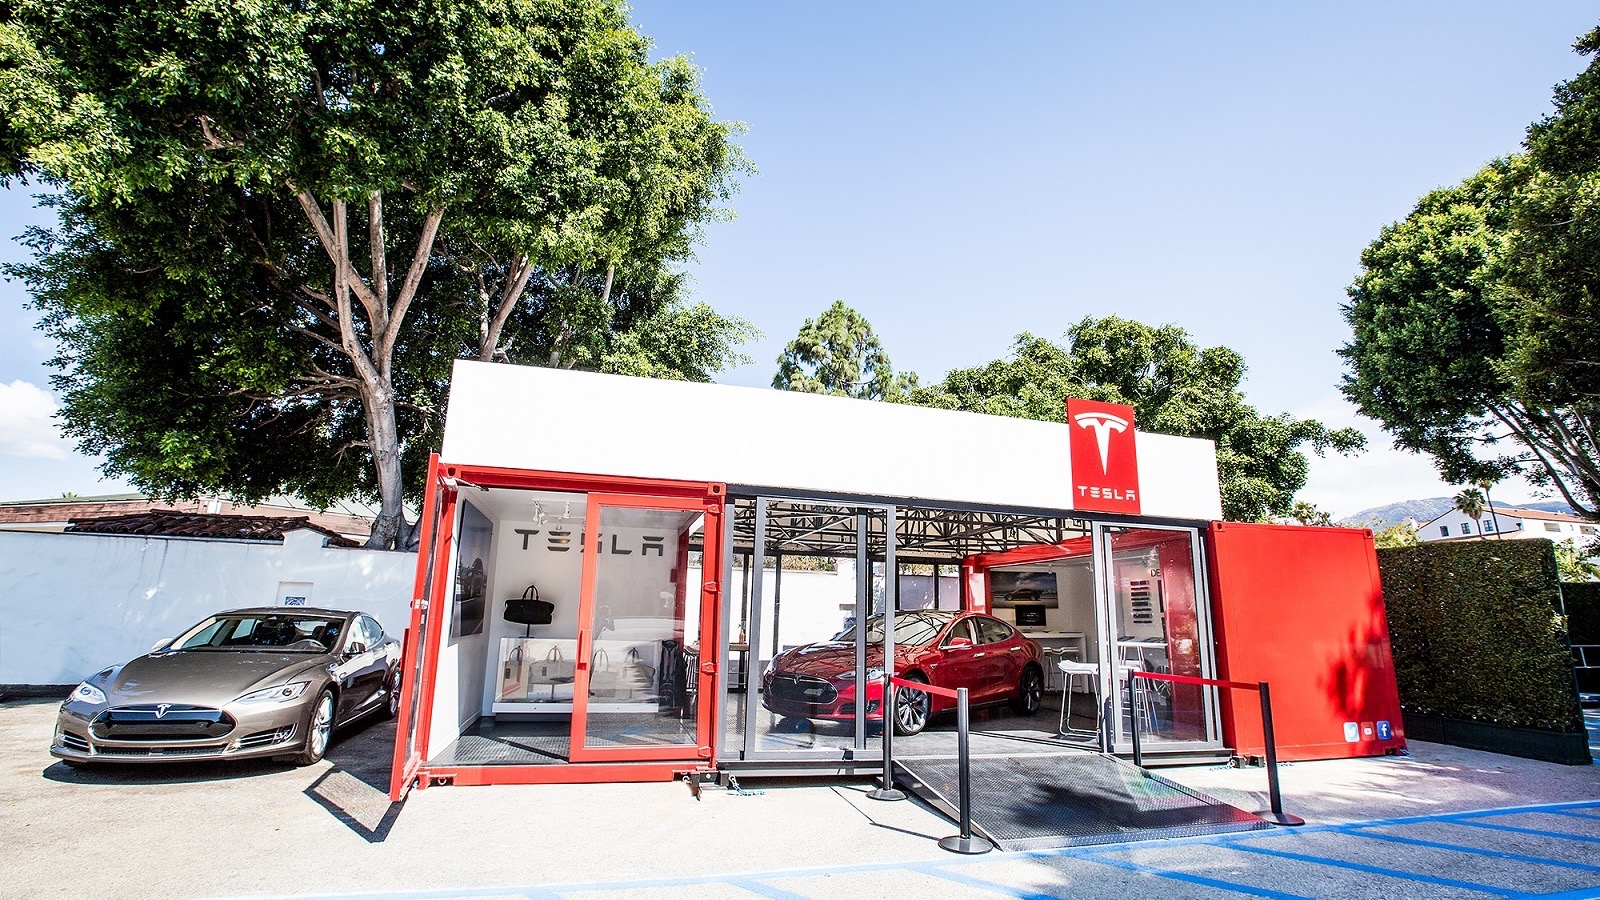 Tesla pop-up store